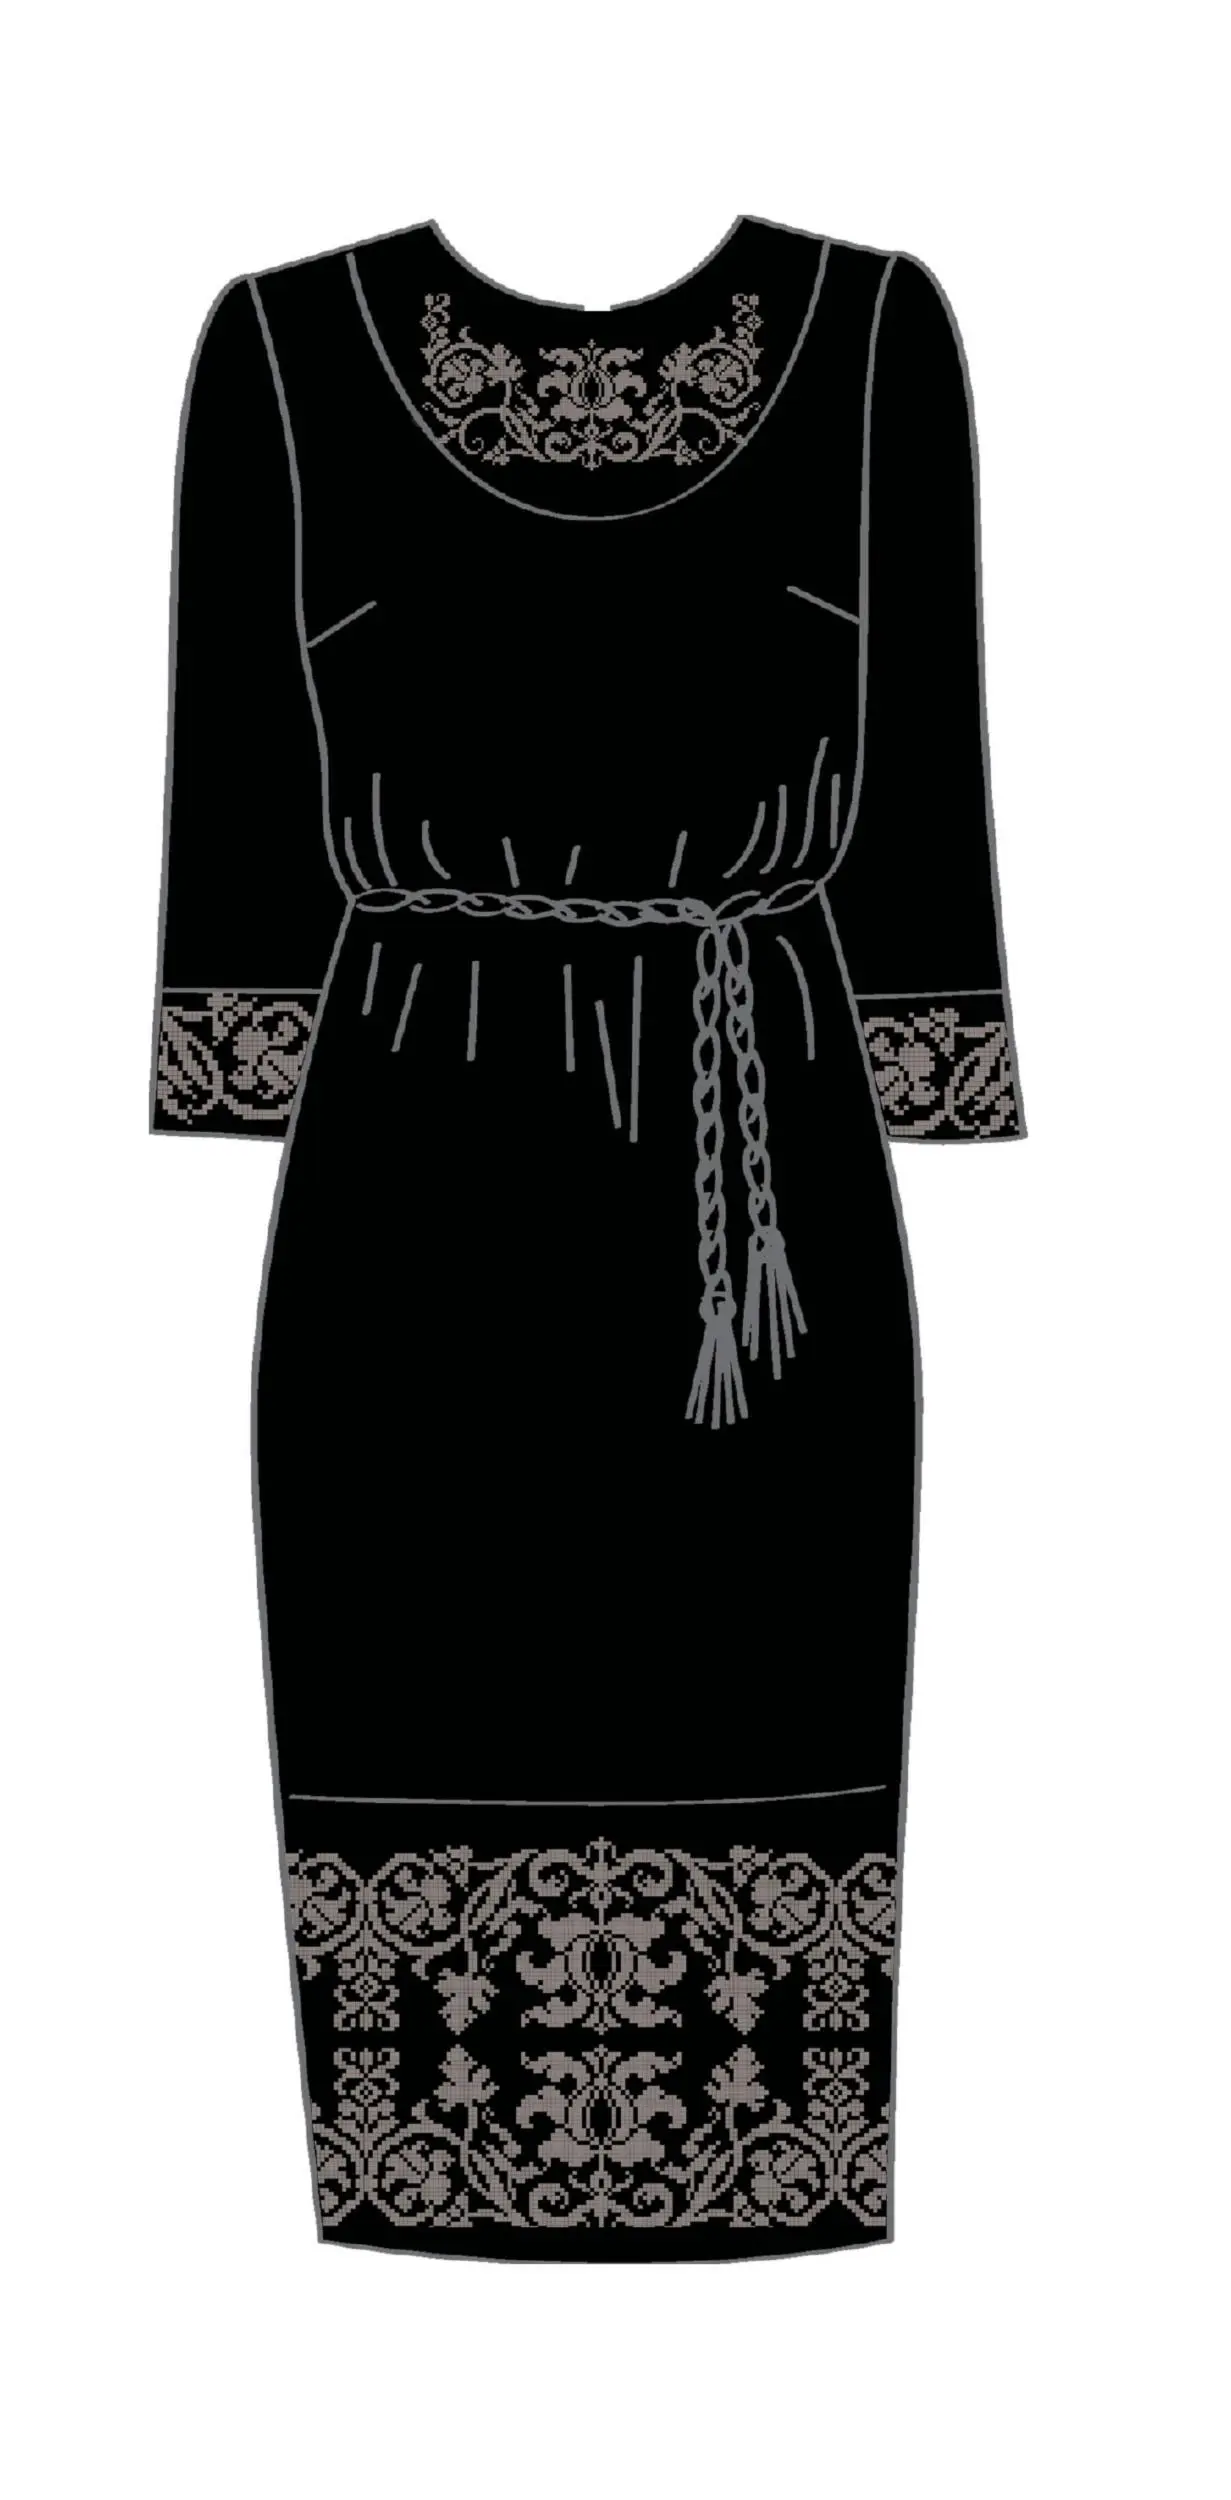 820-14/10 Плаття жіноче з поясом, чорне, розмір 42